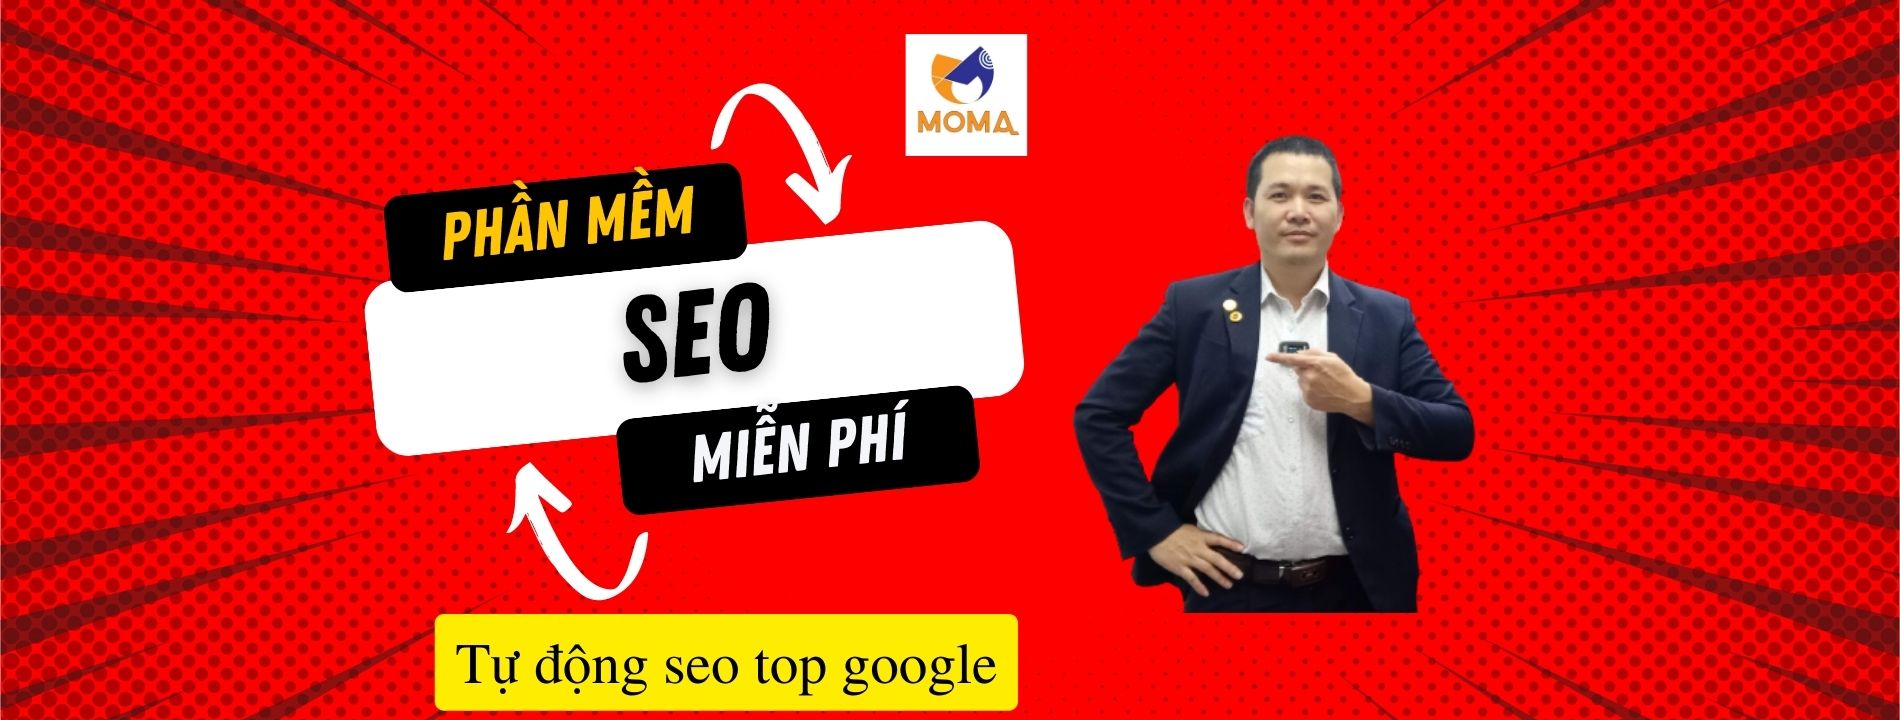 Hướng dẫn sử dụng phần mềm seo moma lên top 1 google sau 1 tuần